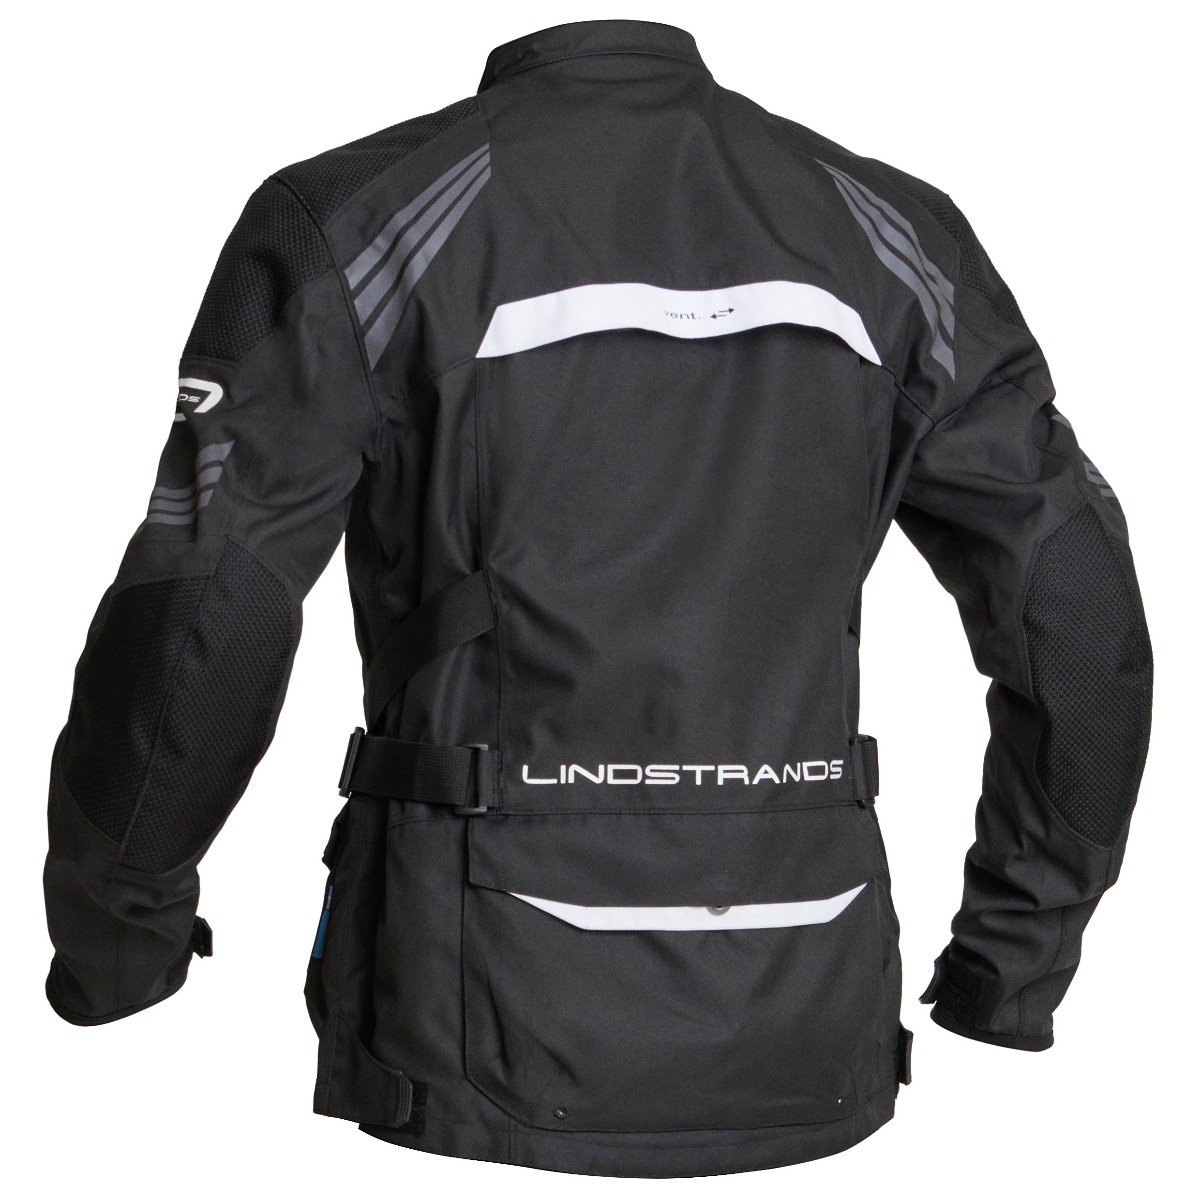 Image of Lindstrands Transtrand Jacket Black White Size 54 EN